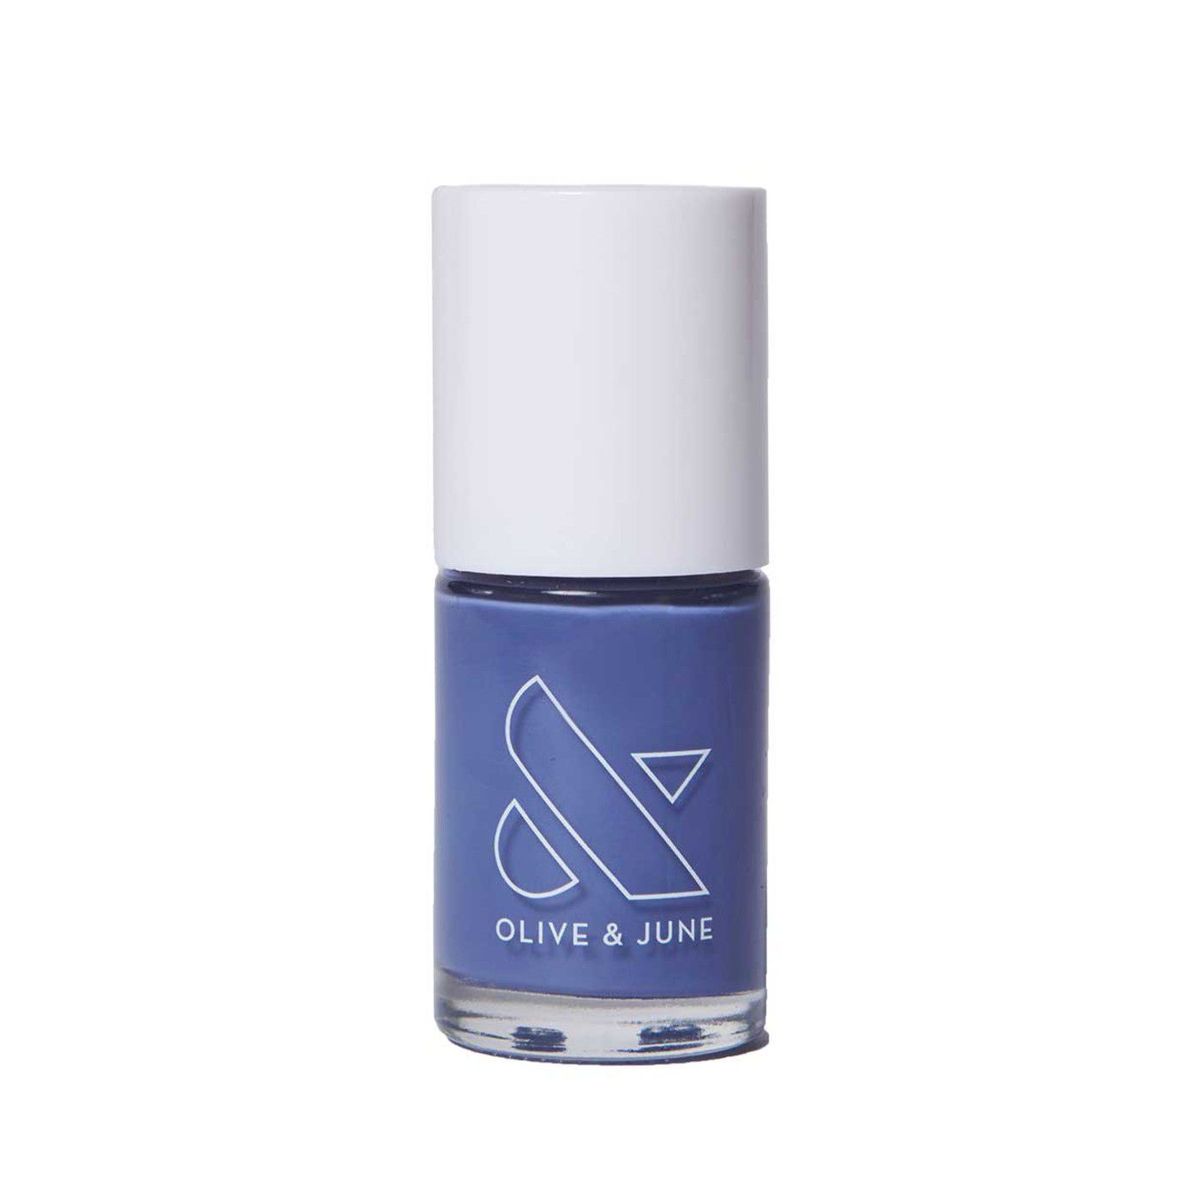 Botella de esmalte de uñas Periwinkle azul sobre un fondo blanco.